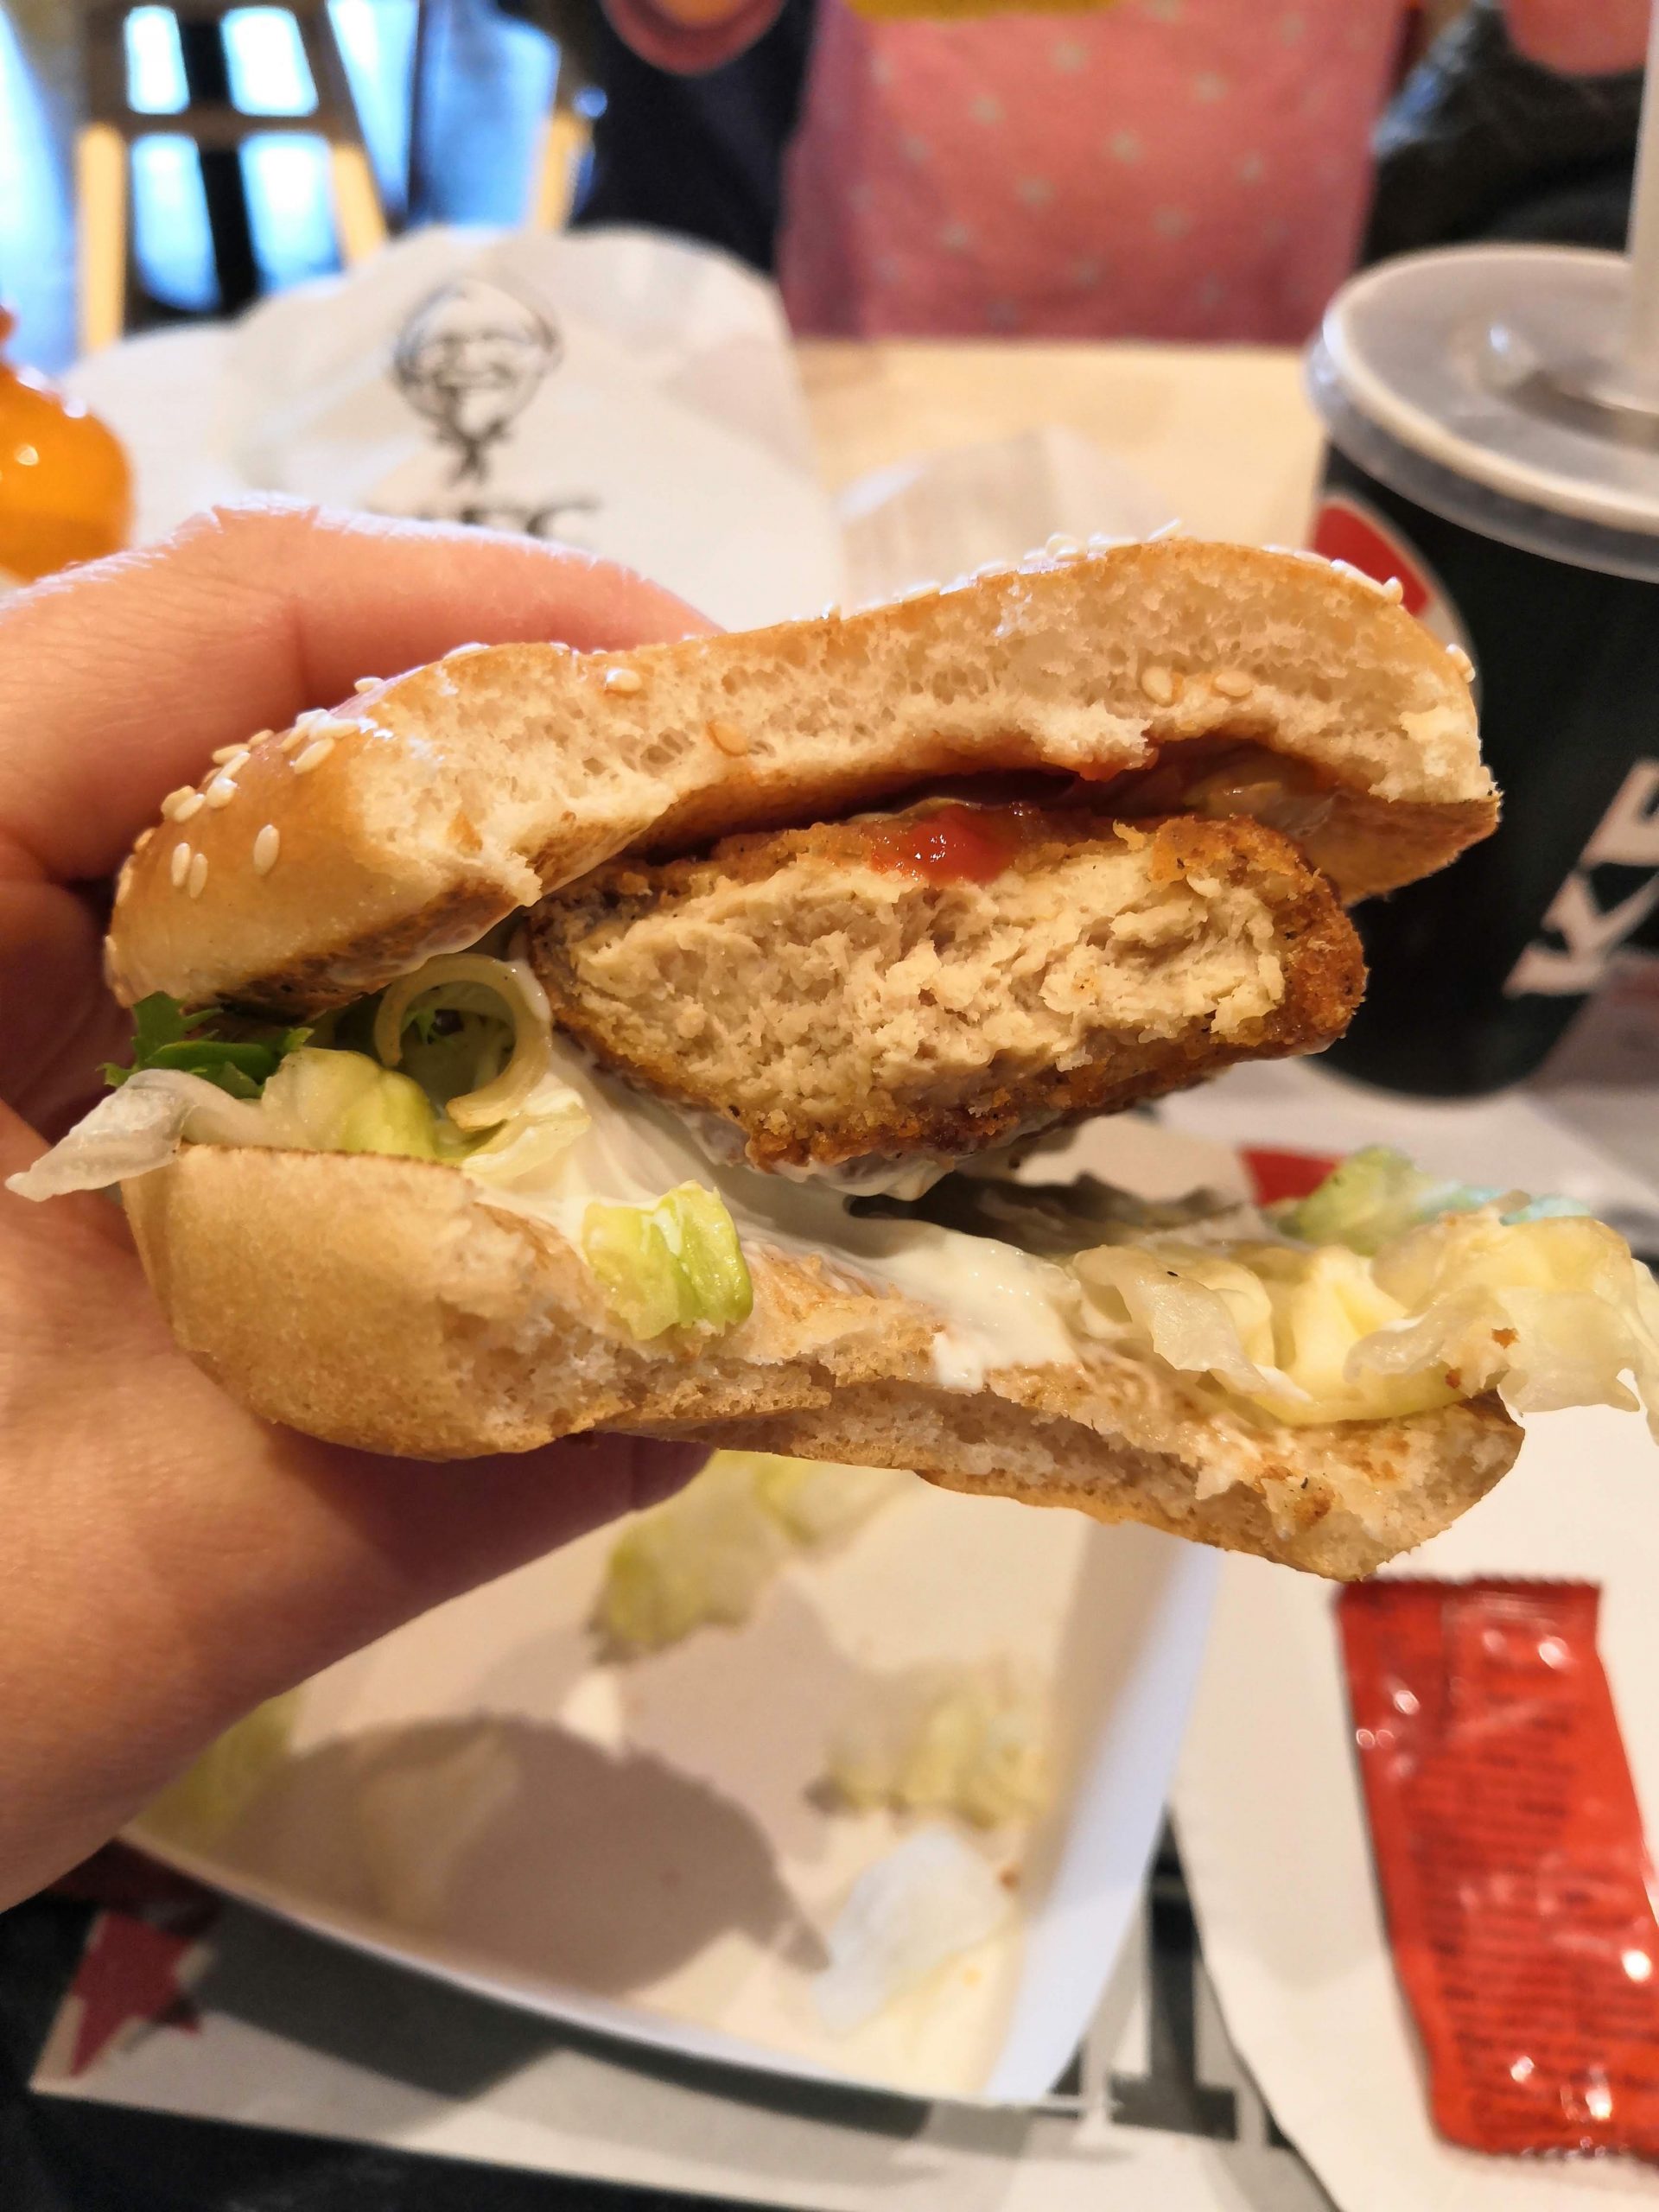 KFC vegan burger close-up as part of a vegan lifestyle